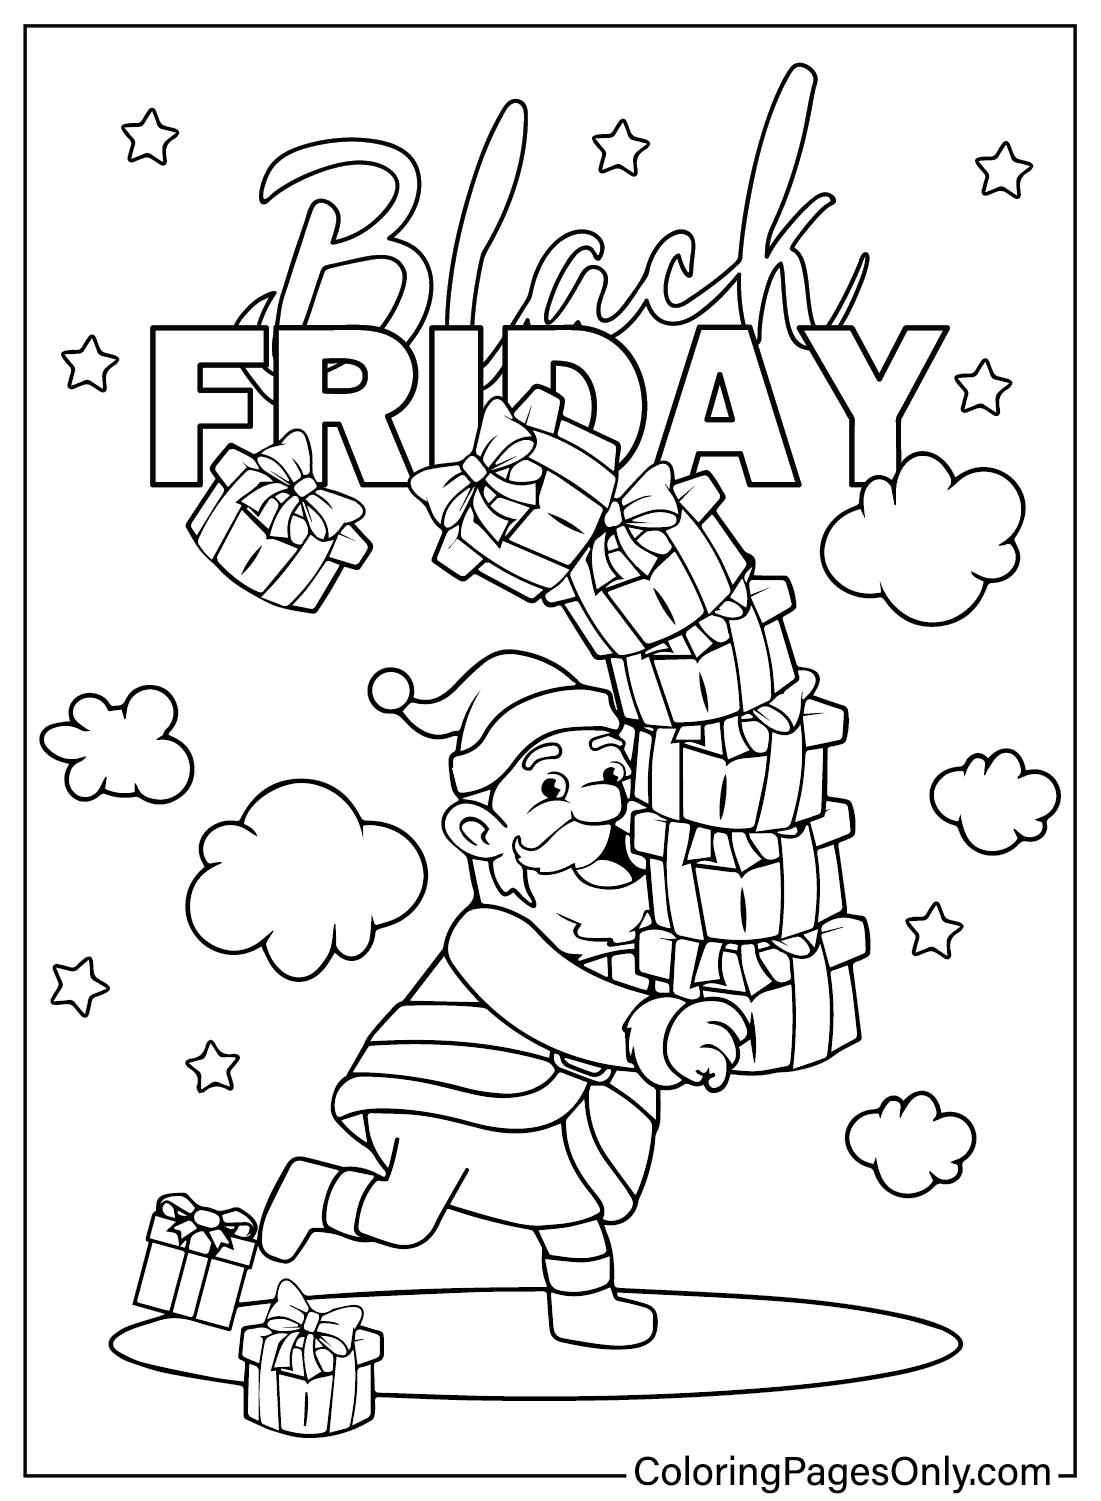 Página para colorear de Papá Noel Black Friday de Black Friday